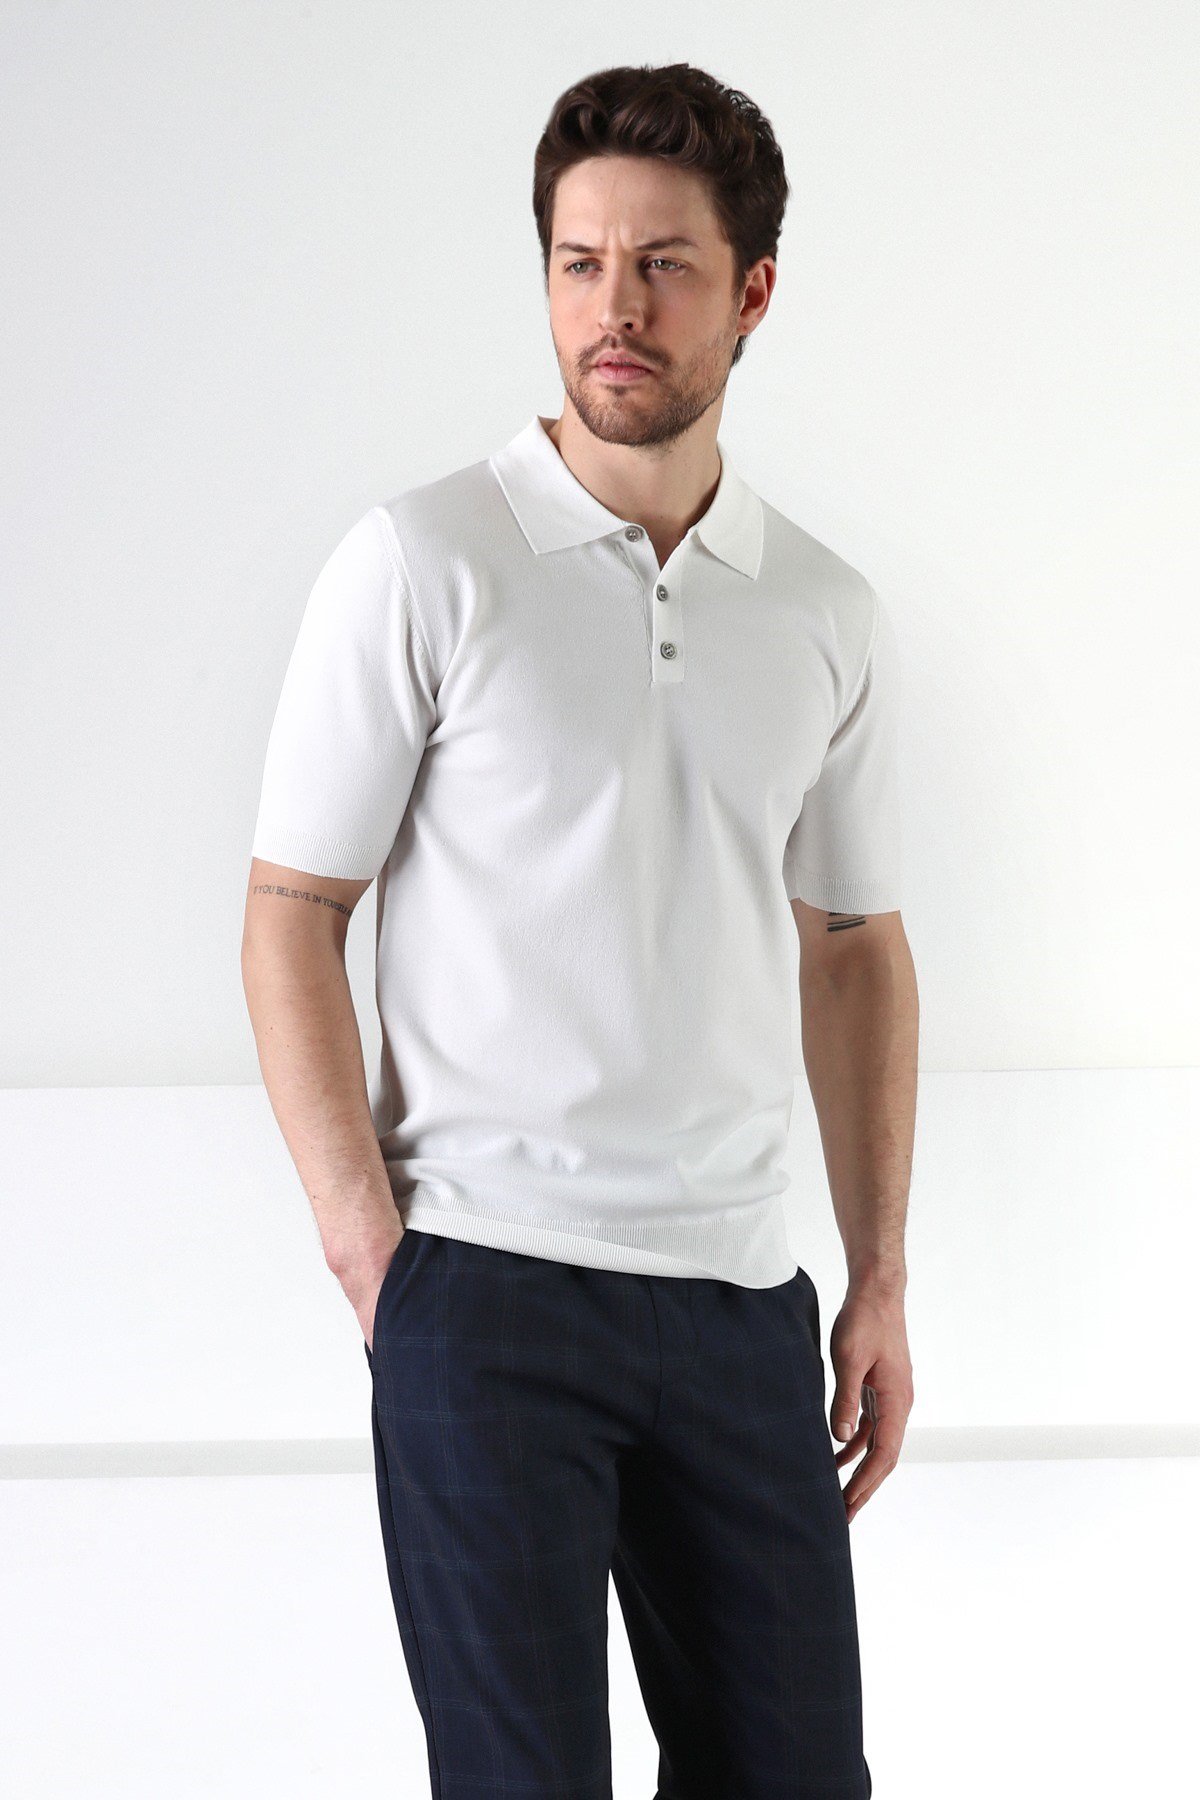 Ferraro Beyaz Düğmeli Polo Yaka Viskon Erkek Triko T-Shirt | Erkek Giyim |  ModaFerraro